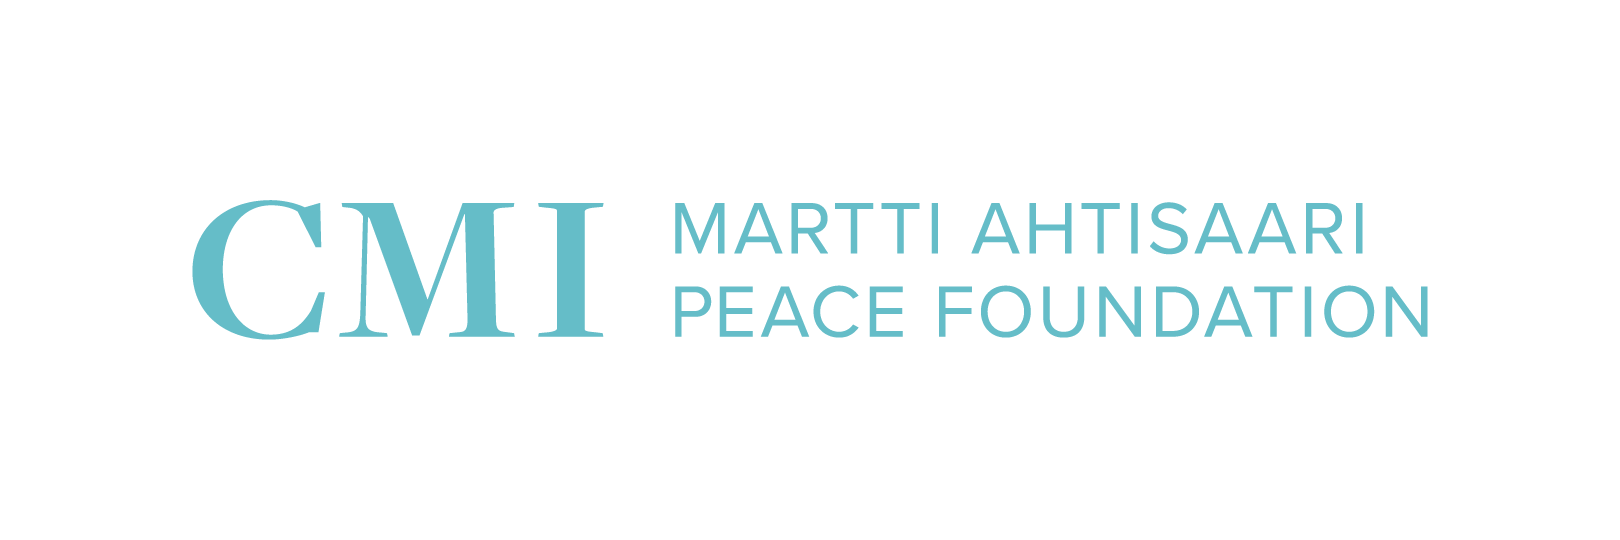 CMI Martti Ahtisaari Peace Foundation